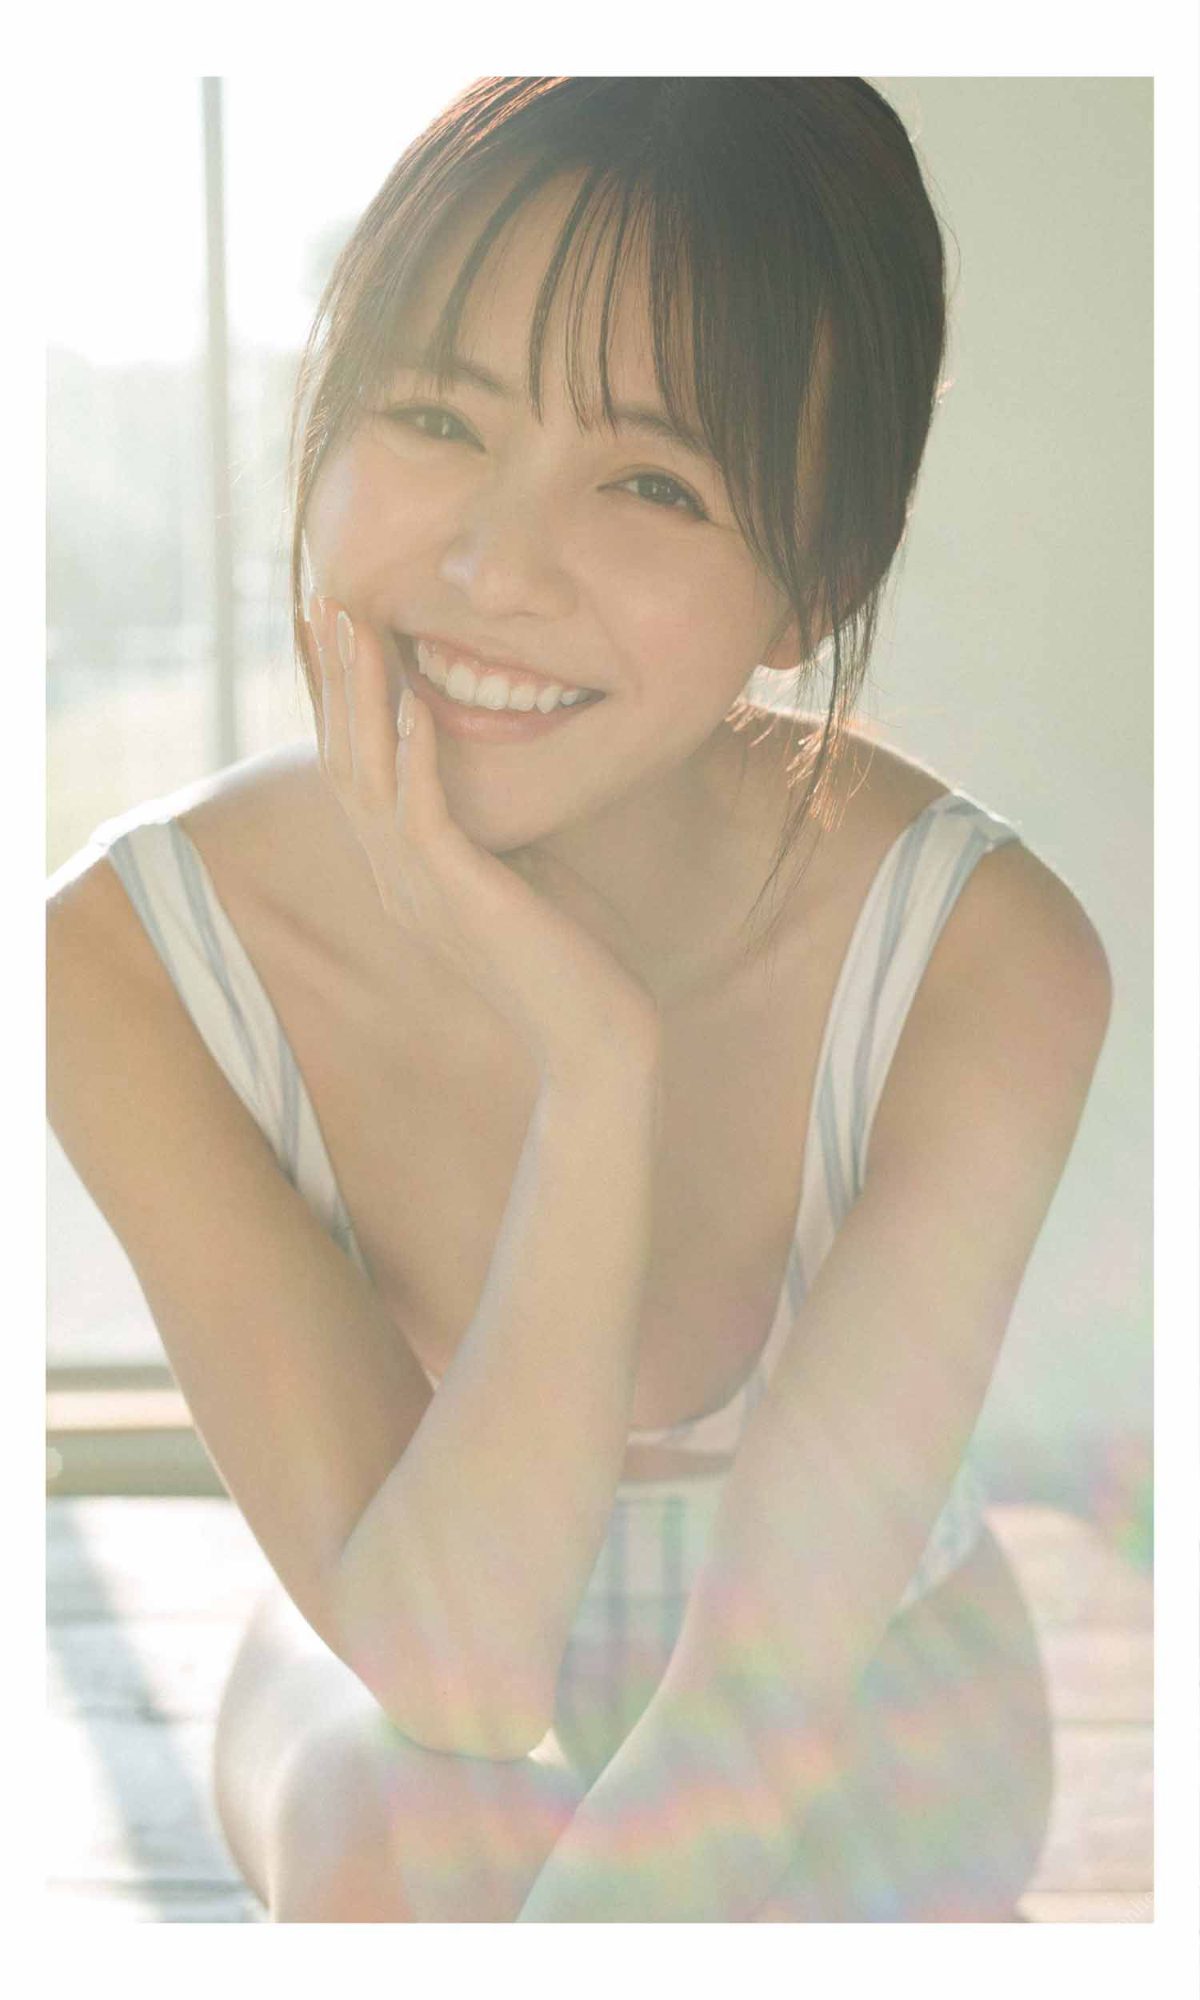 Weekly Photobook 2021 02 08 Sachika Nitta 新田さちか Love girlfriend 恋リアな彼女 6 4101396798.jpg